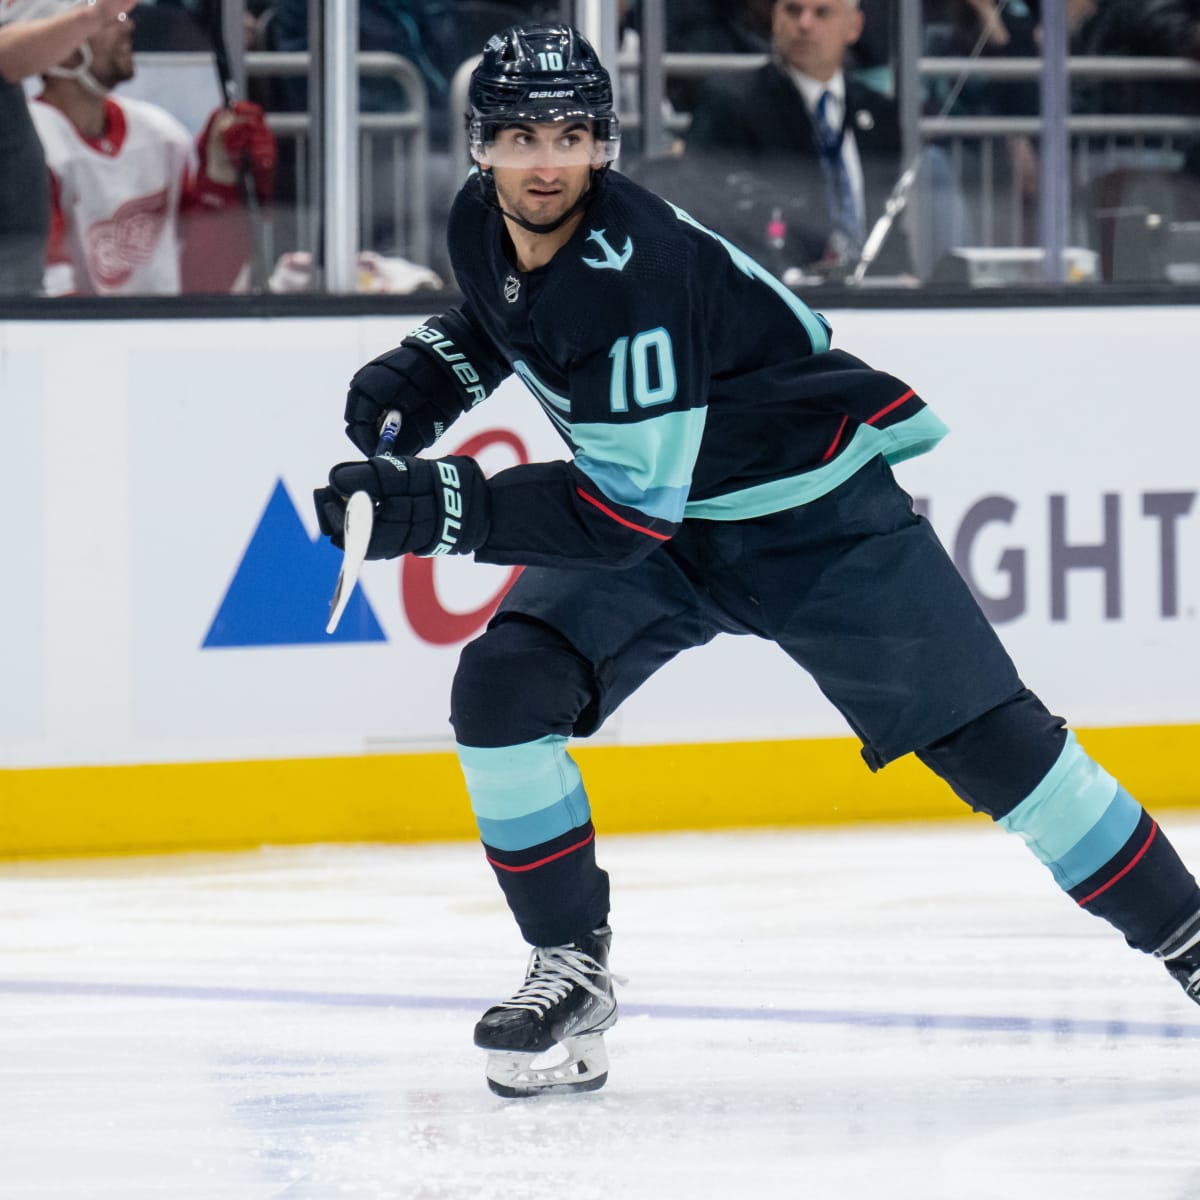 2022 Fantasy Hockey Rookies: Kent Johnson Could Make an Impact